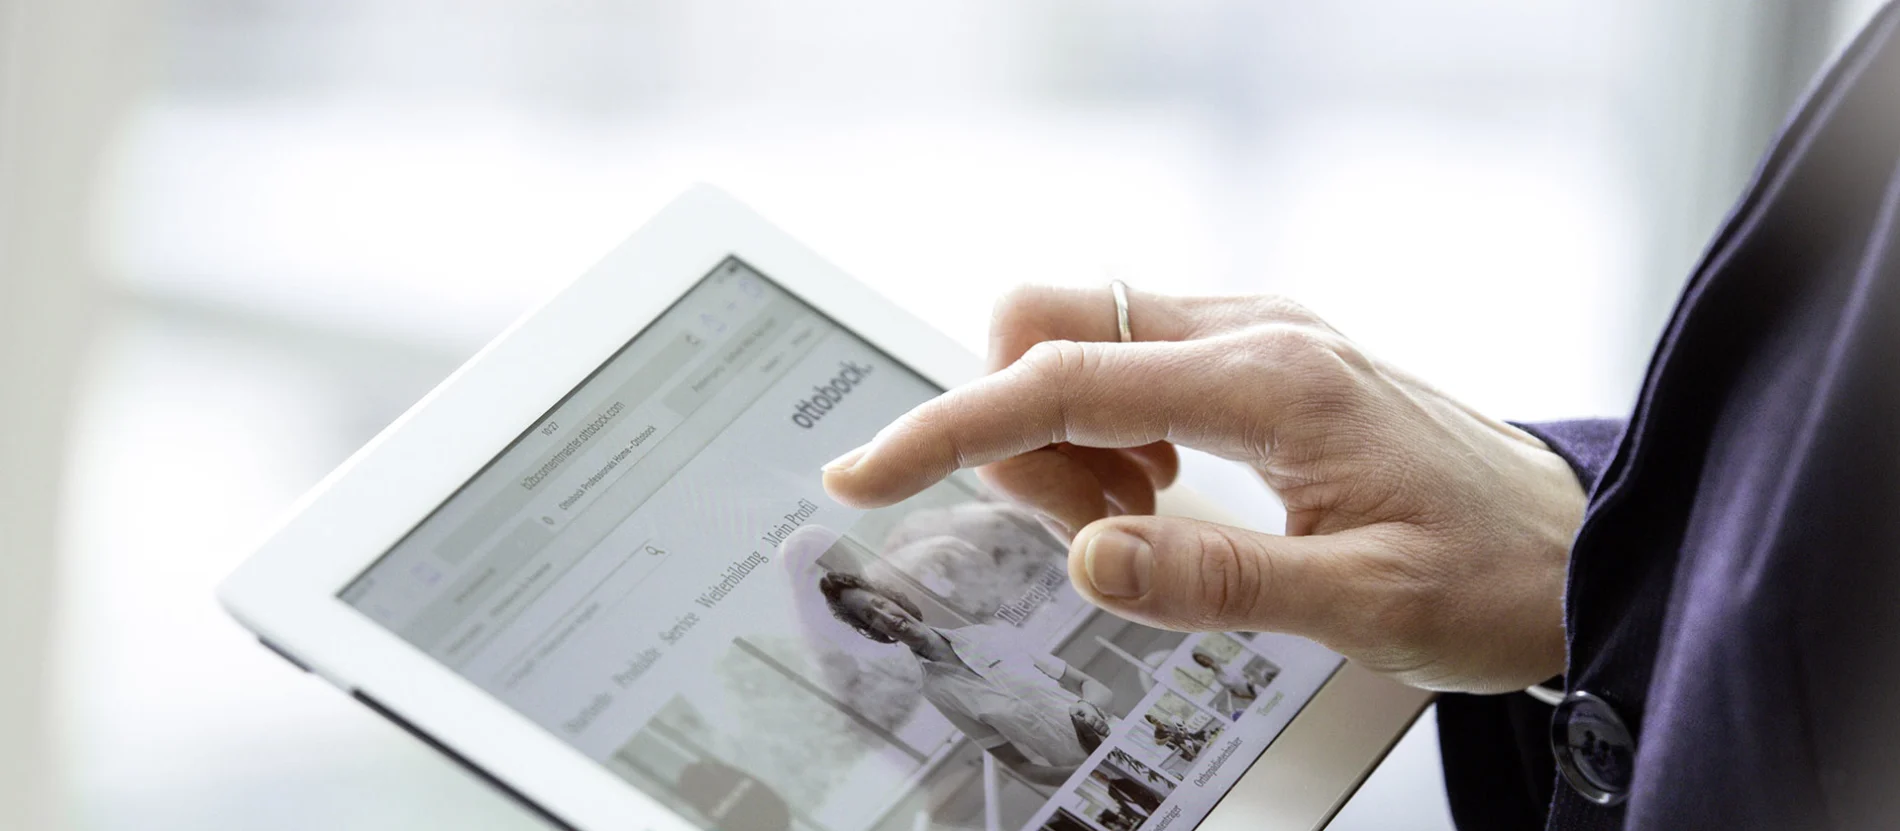 Eine Frau hält ein Tablet in der Hand mit der Ottobock Website auf dem Screen.